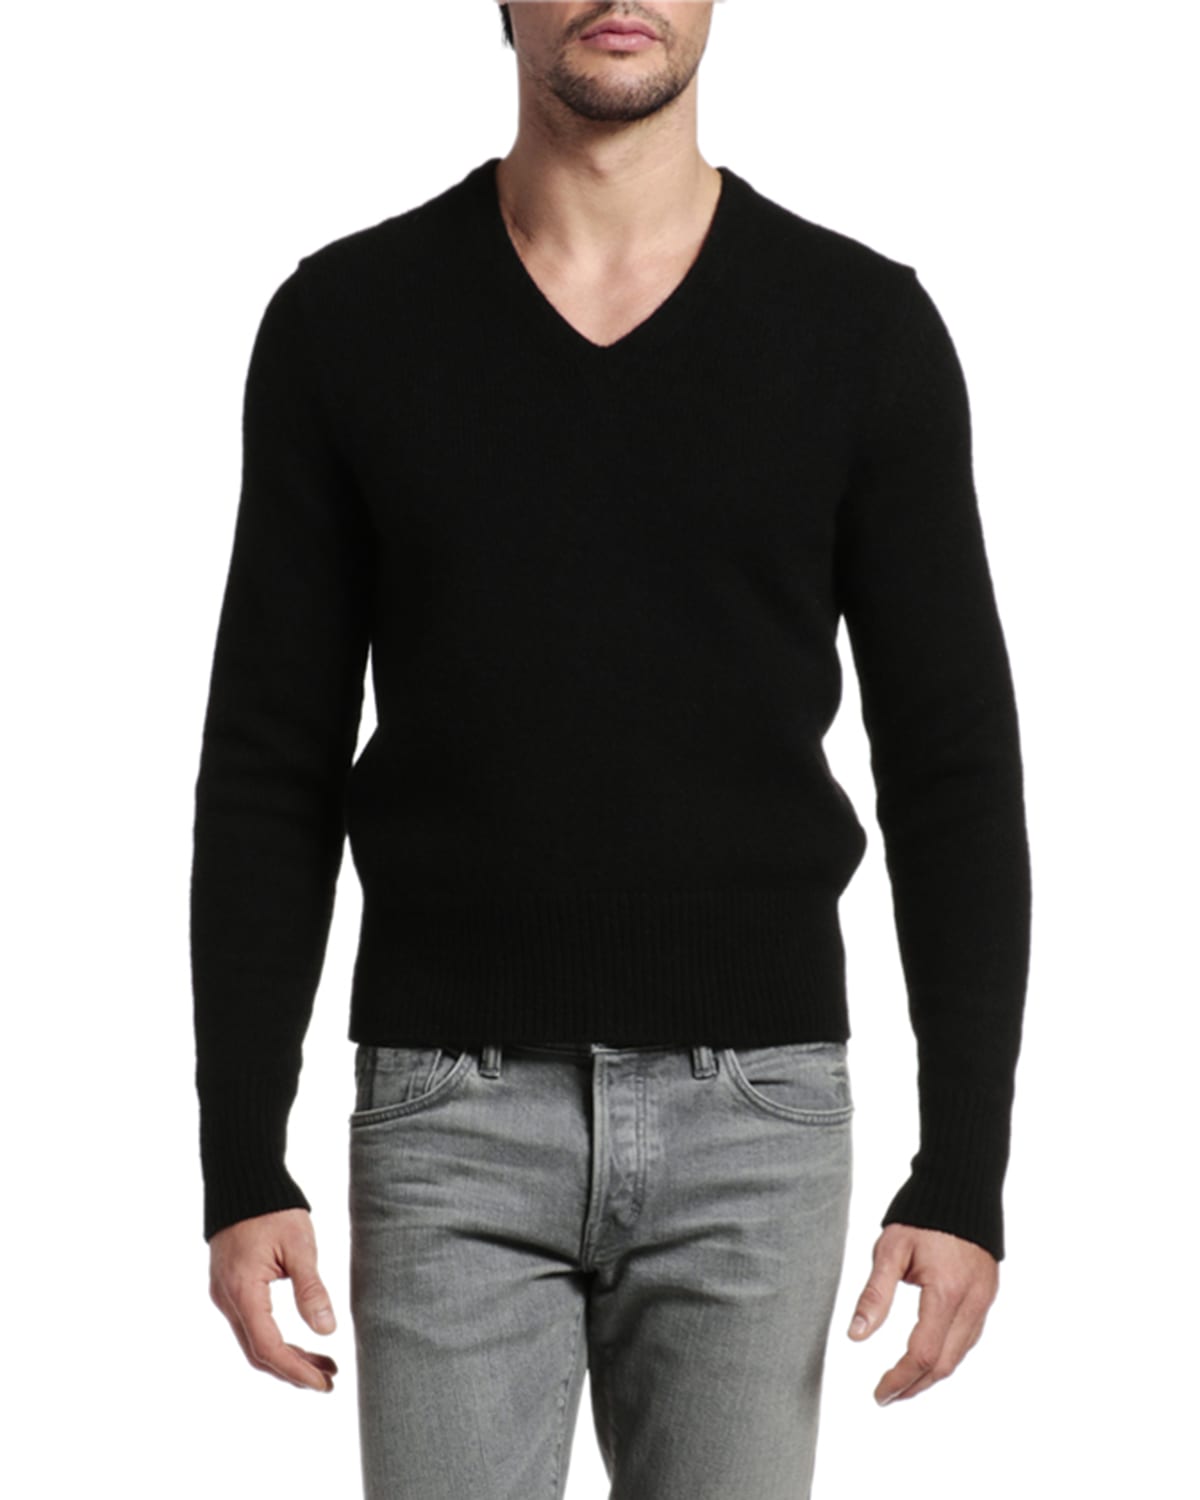 TOM FORD Men's Quarter-Zip Wool Sweater | Neiman Marcus